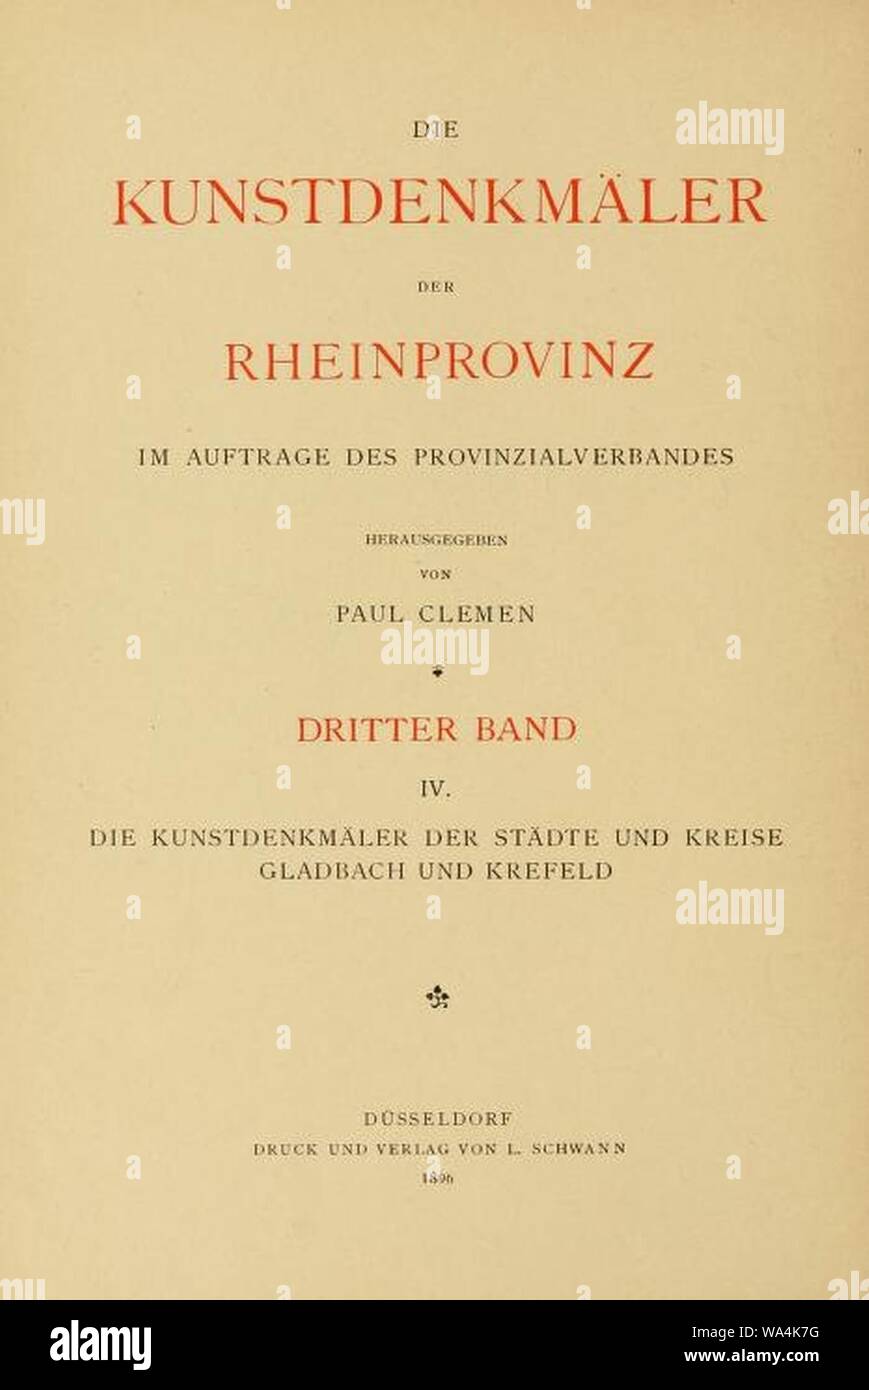 Die Kunstdenkmäler der Rheinprovinz, Innentitel, 3. Band, Abteilung 4. Foto Stock